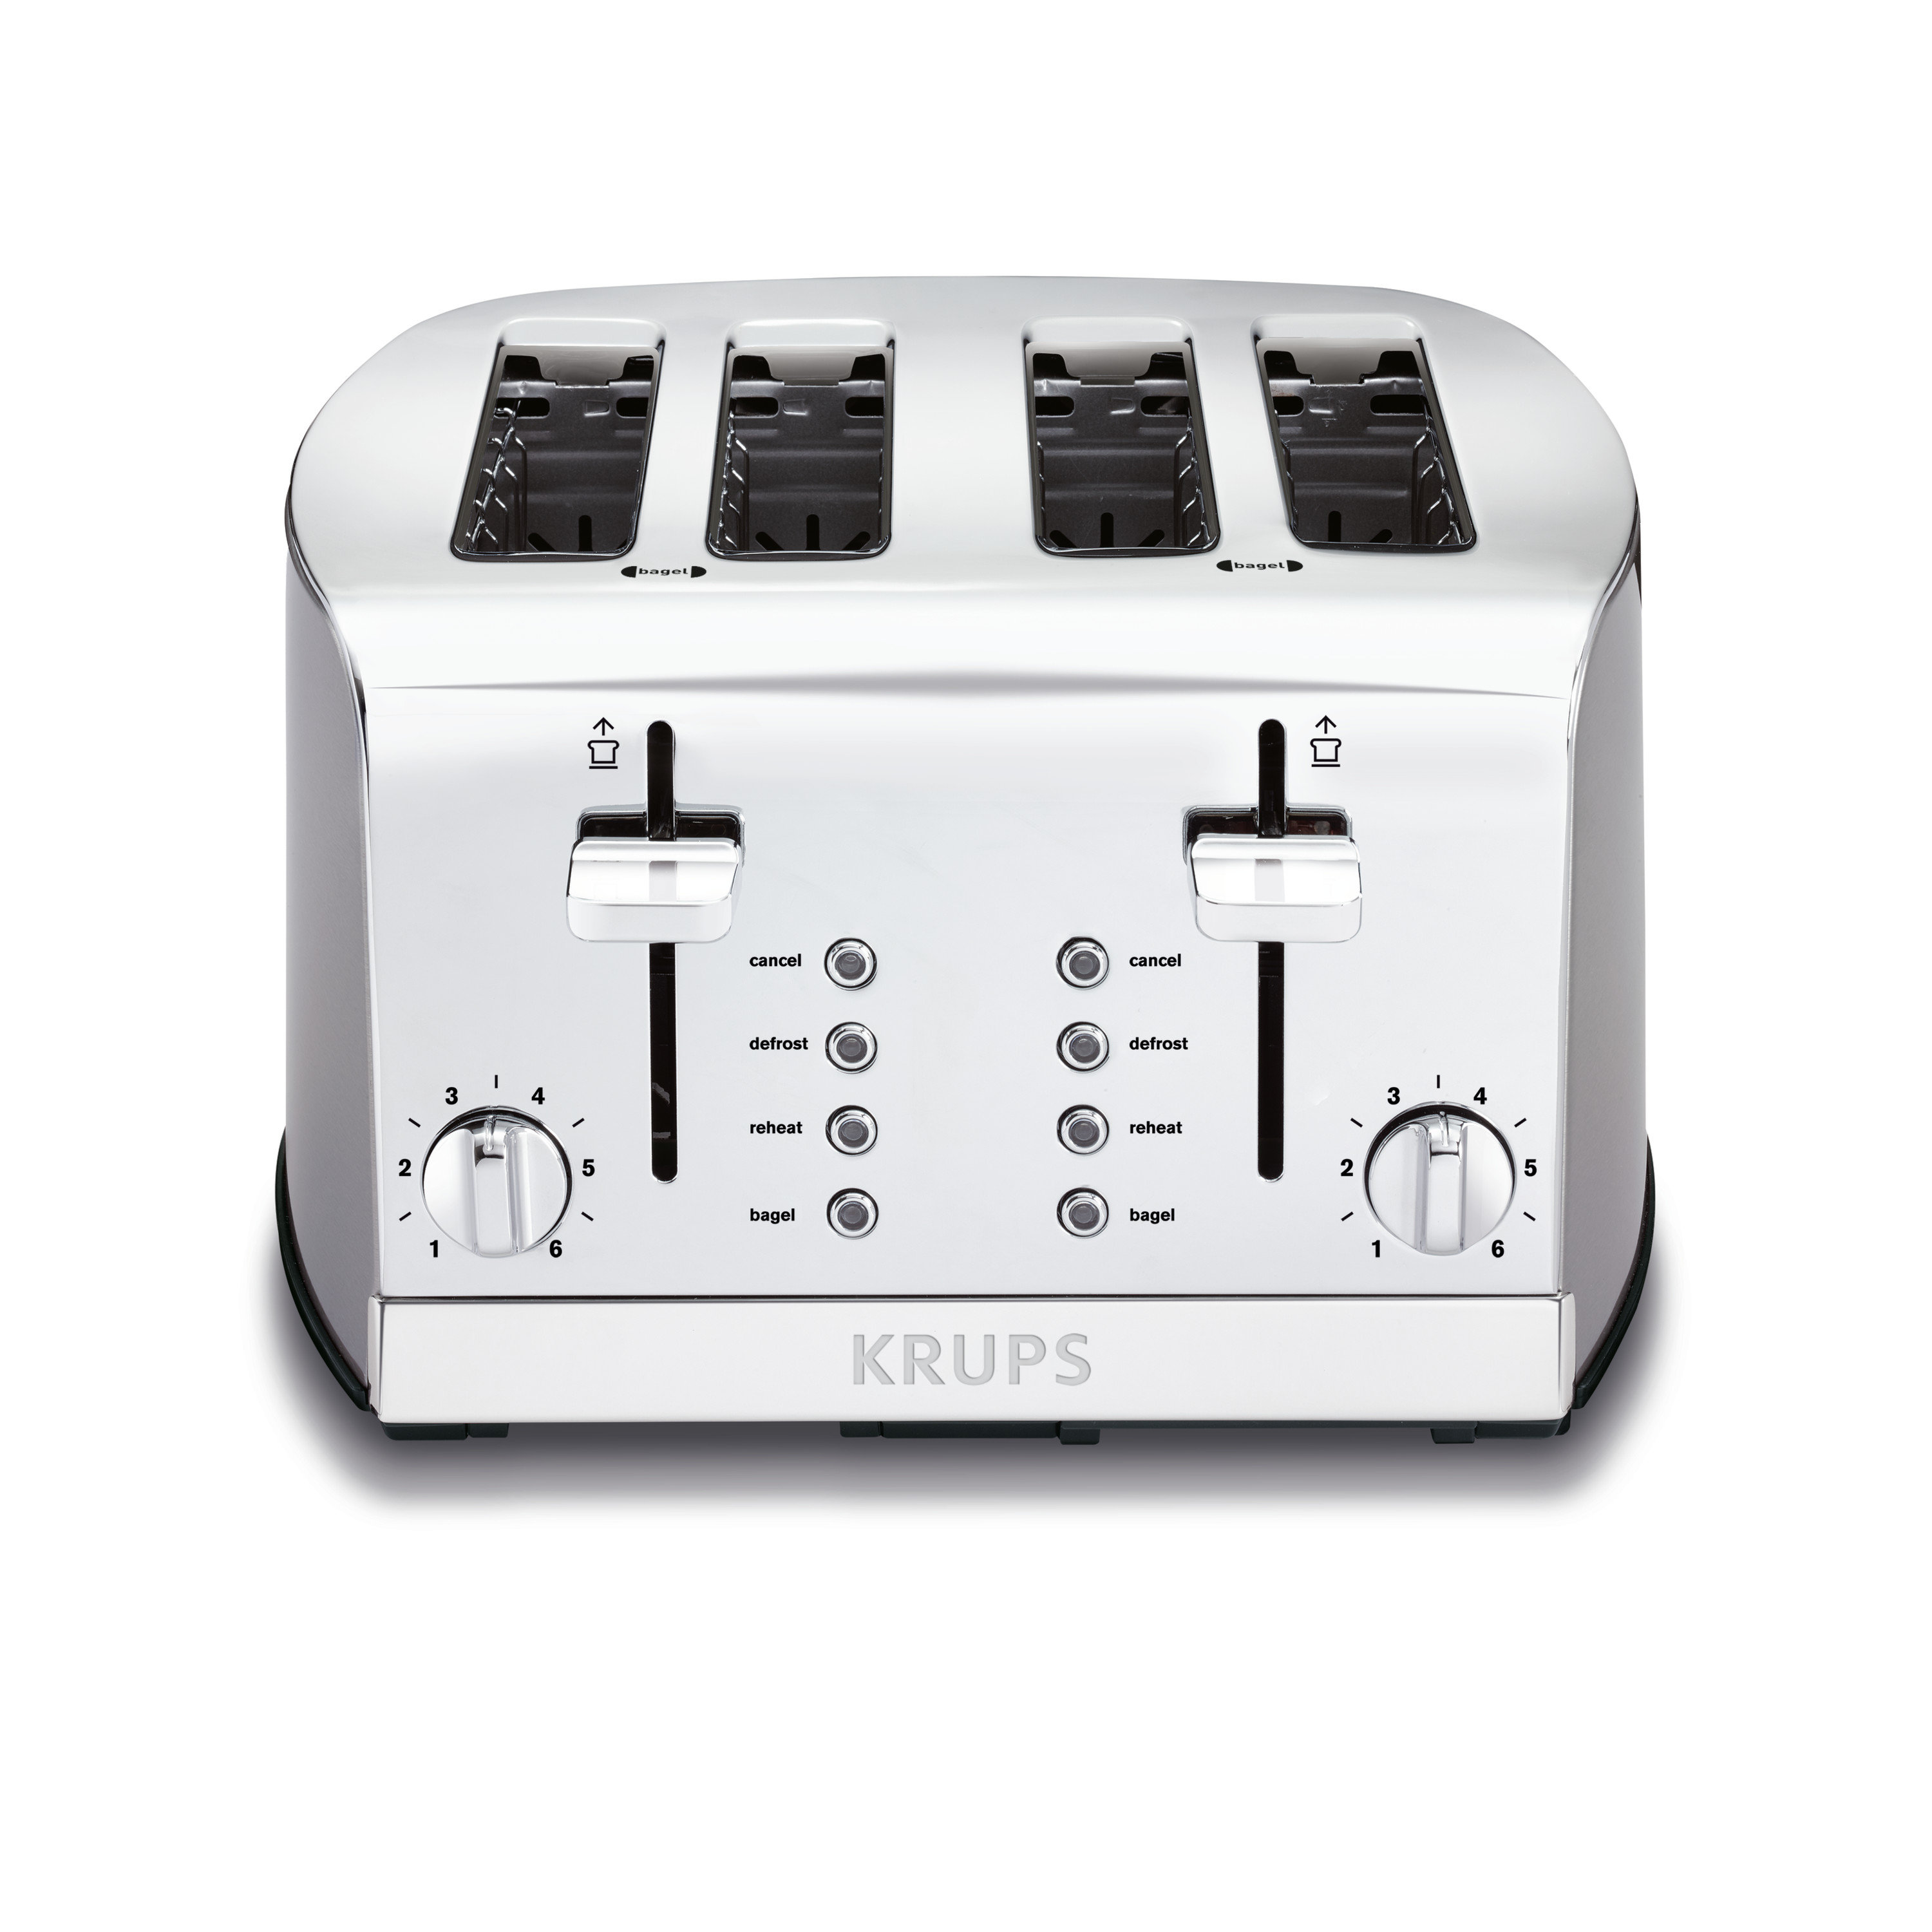 https://assets.wfcdn.com/im/70365171/compr-r85/2219/221925426/4-slice-toaster.jpg